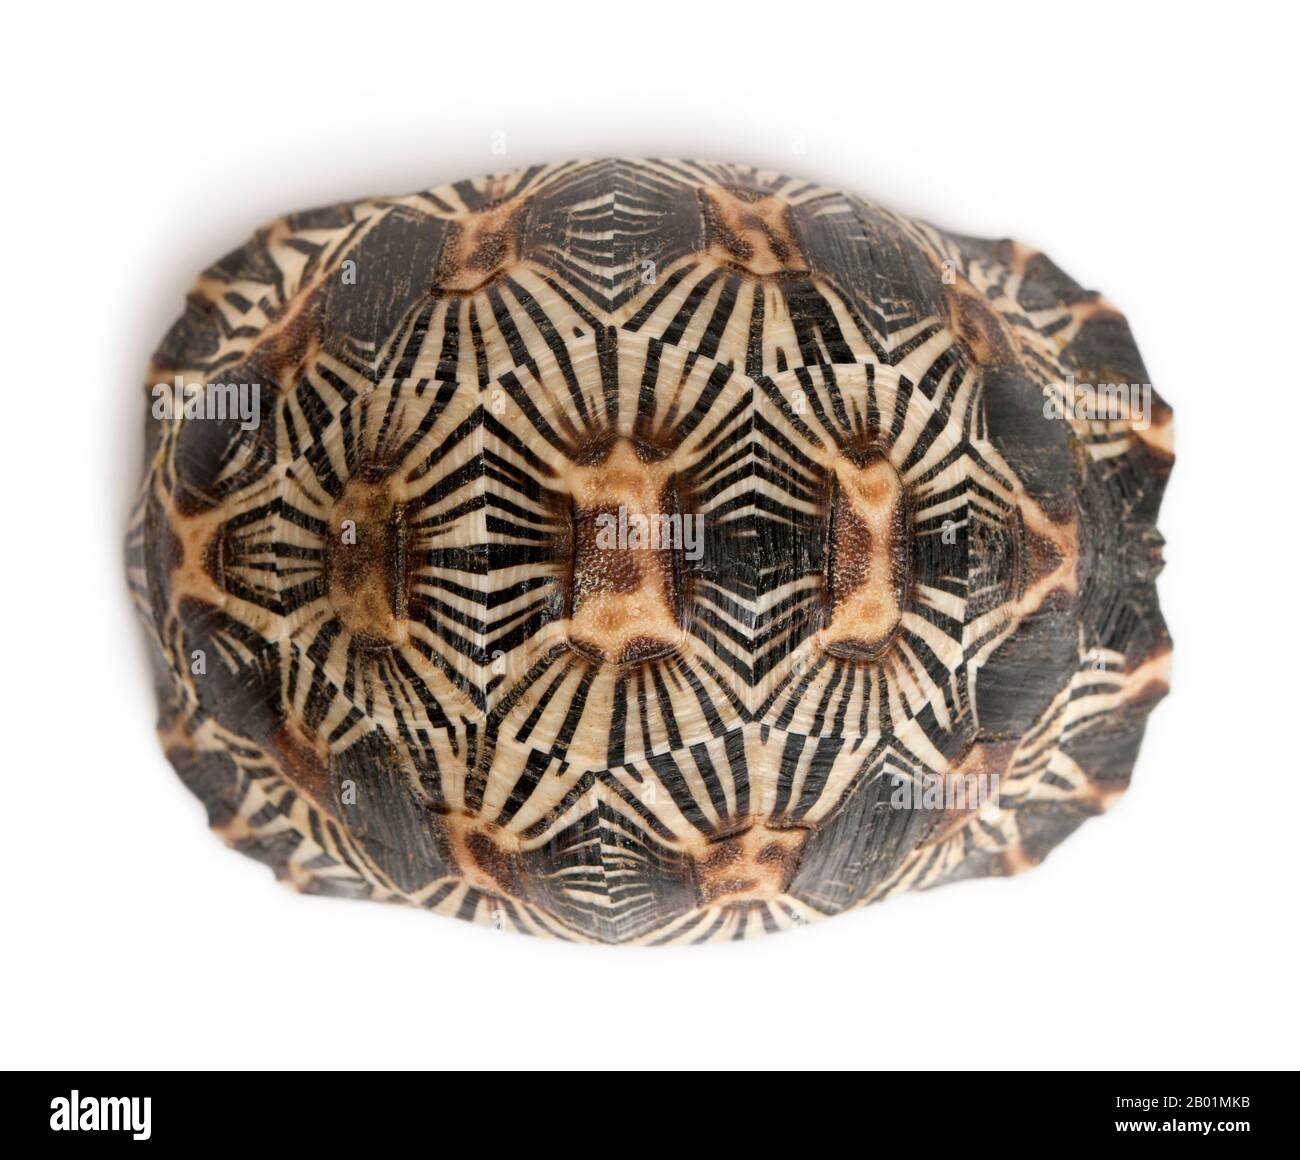 Irradiata tartaruga, Astrochelys radiata, di fronte a uno sfondo bianco Foto Stock